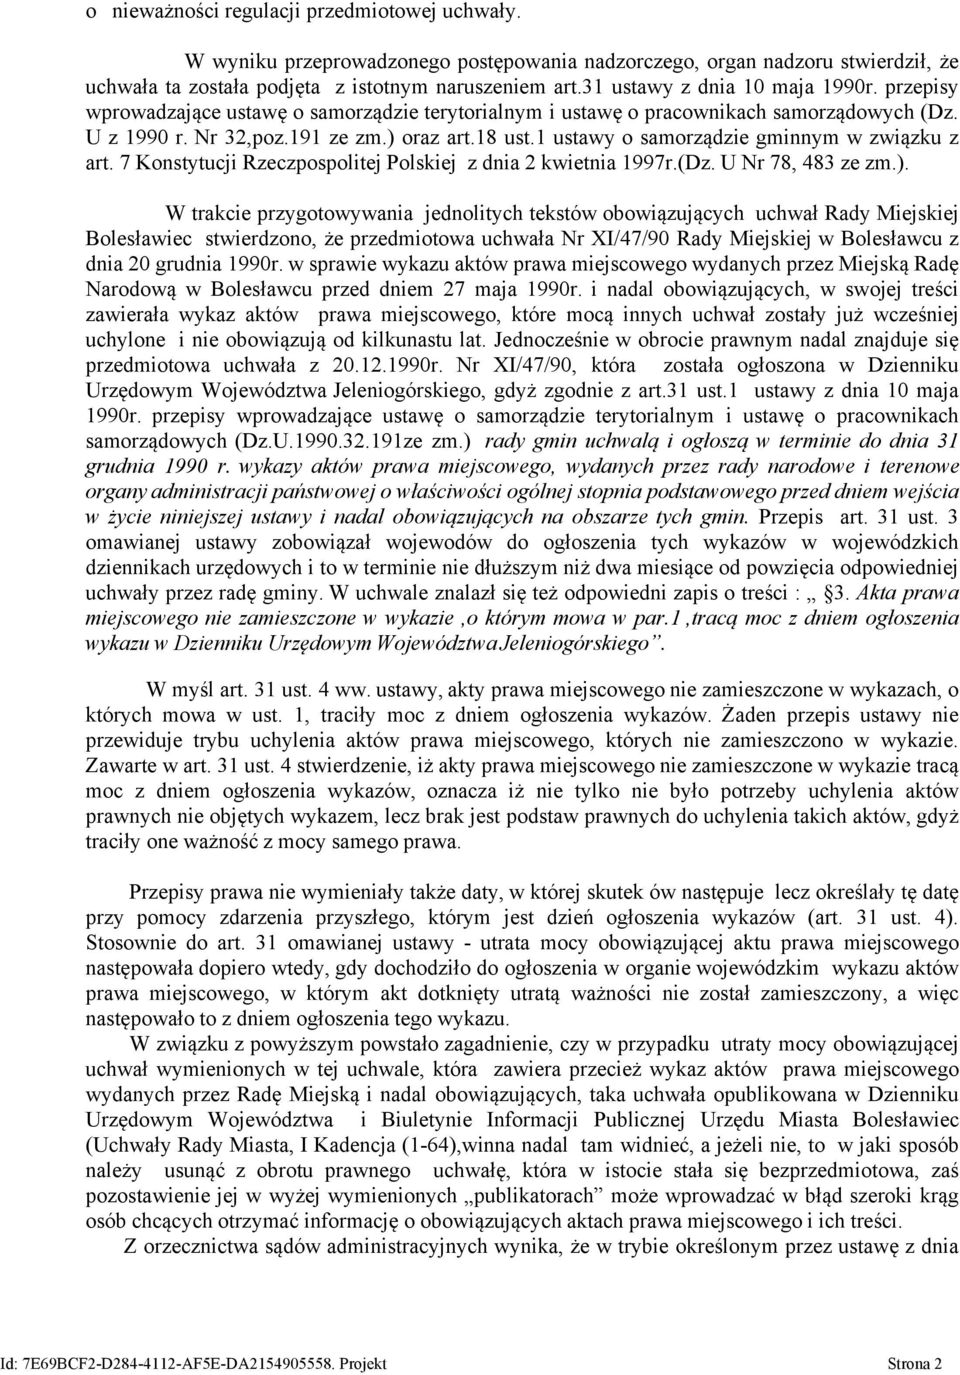 1 ustawy o samorządzie gminnym w związku z art. 7 Konstytucji Rzeczpospolitej Polskiej z dnia 2 kwietnia 1997r.(Dz. U Nr 78, 483 ze zm.).